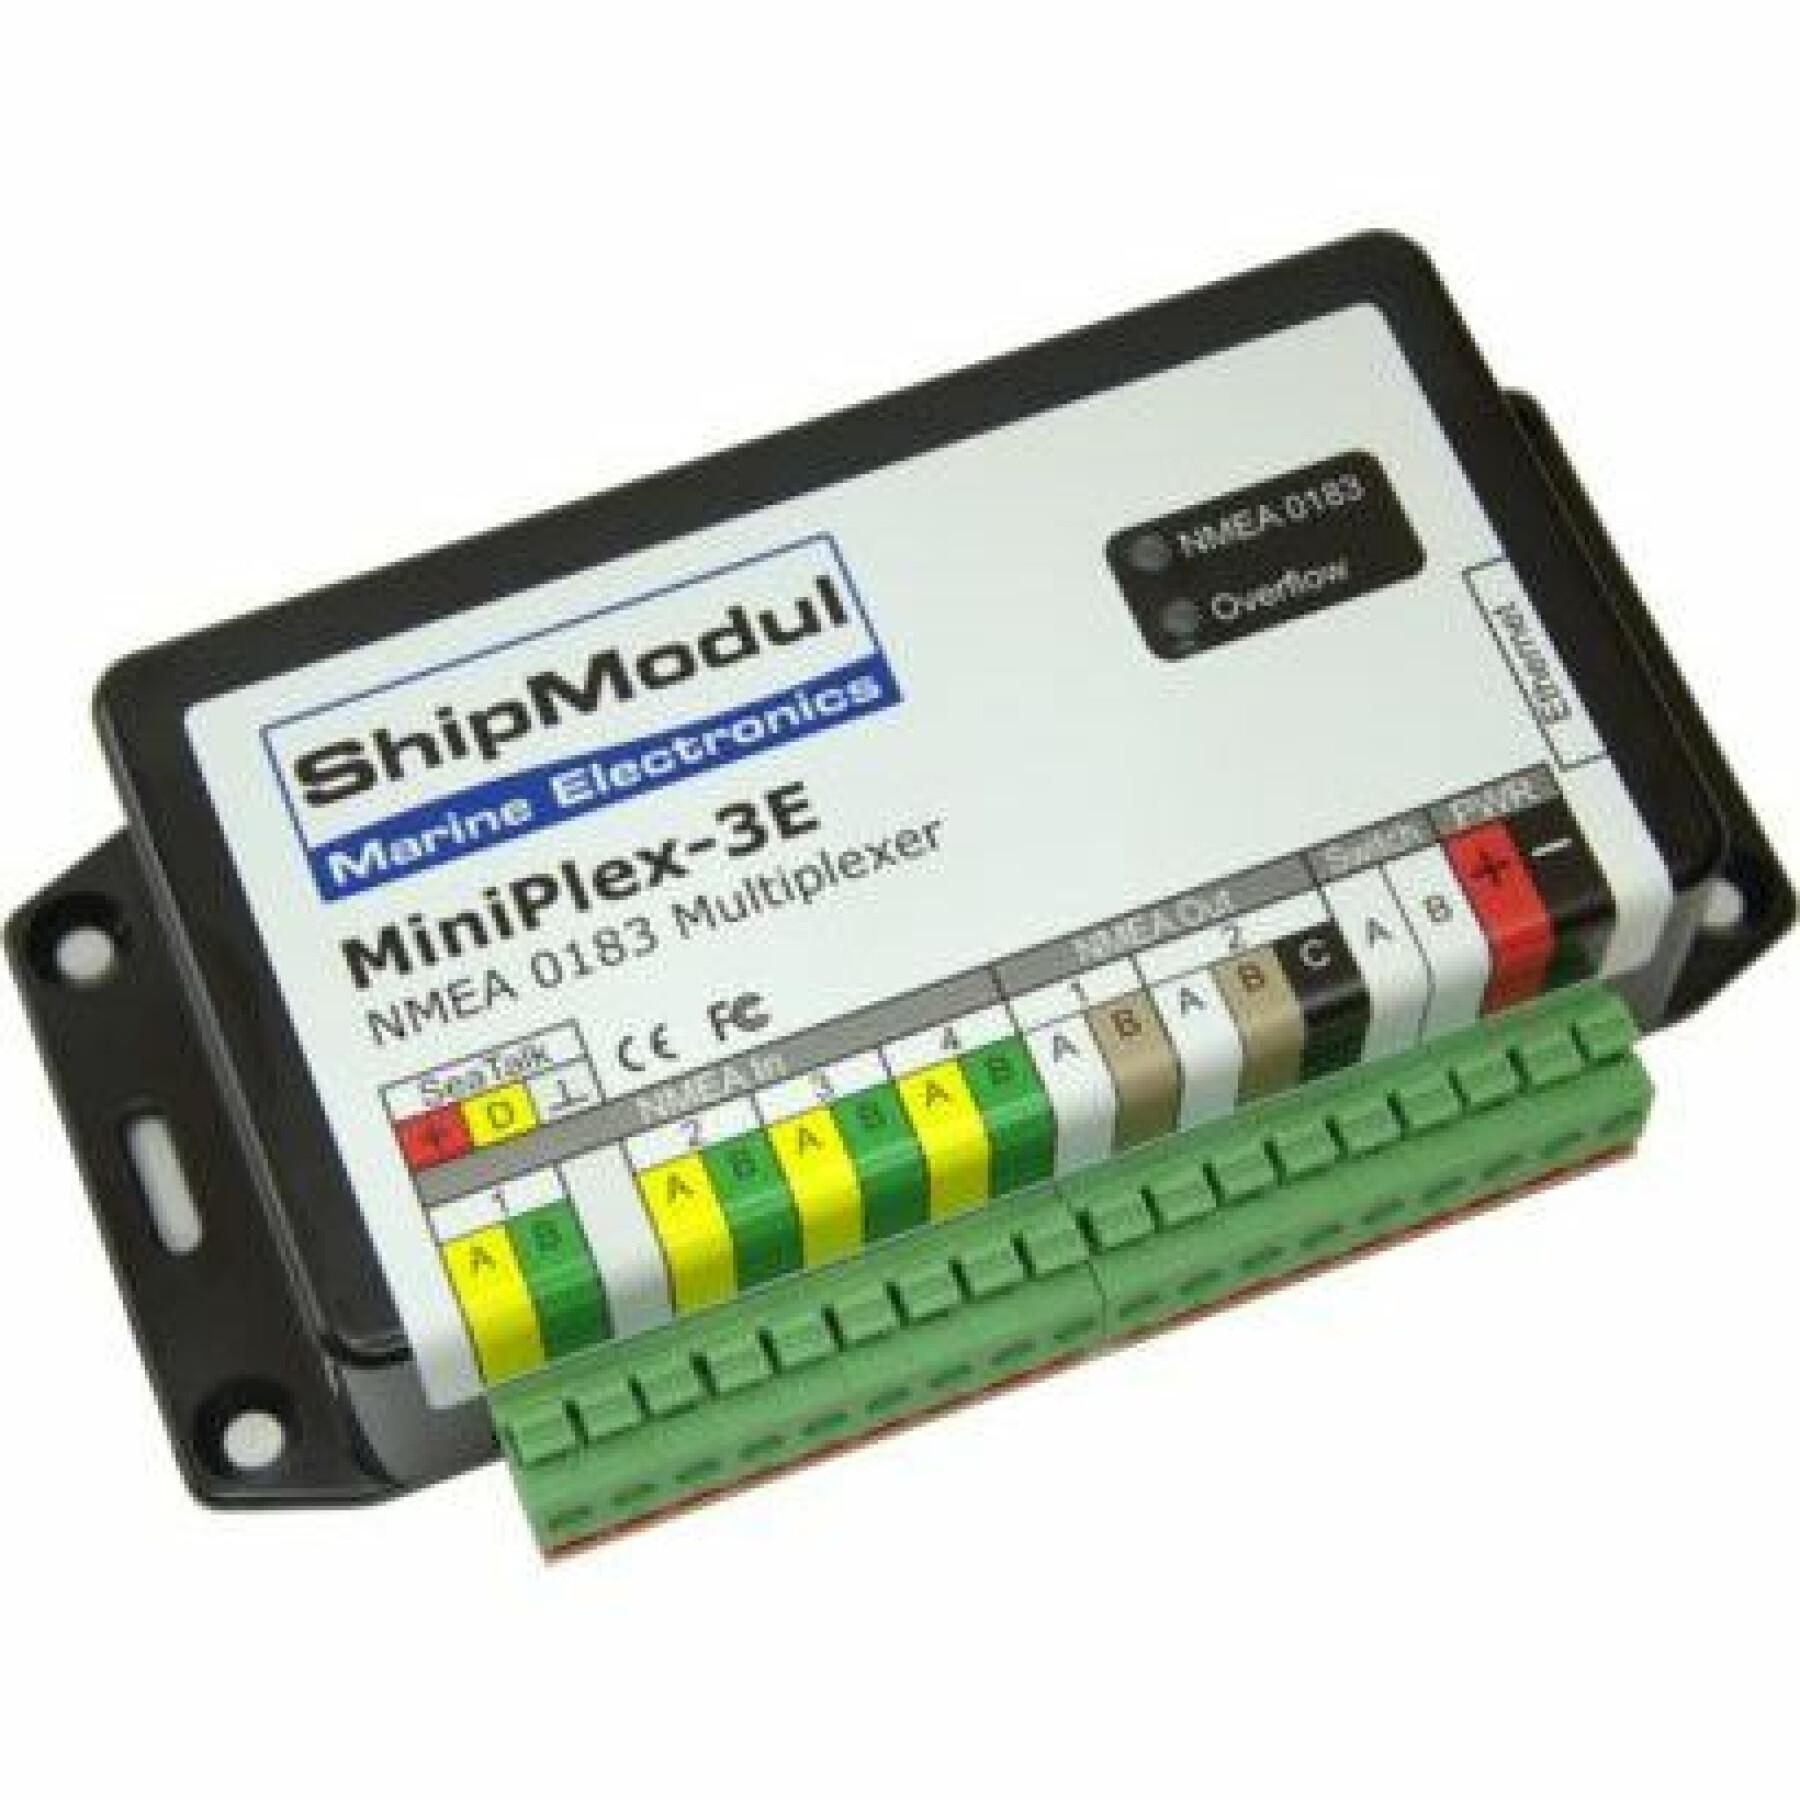 Multiplexer versione Ethernet ShipModul Miniplex-3E